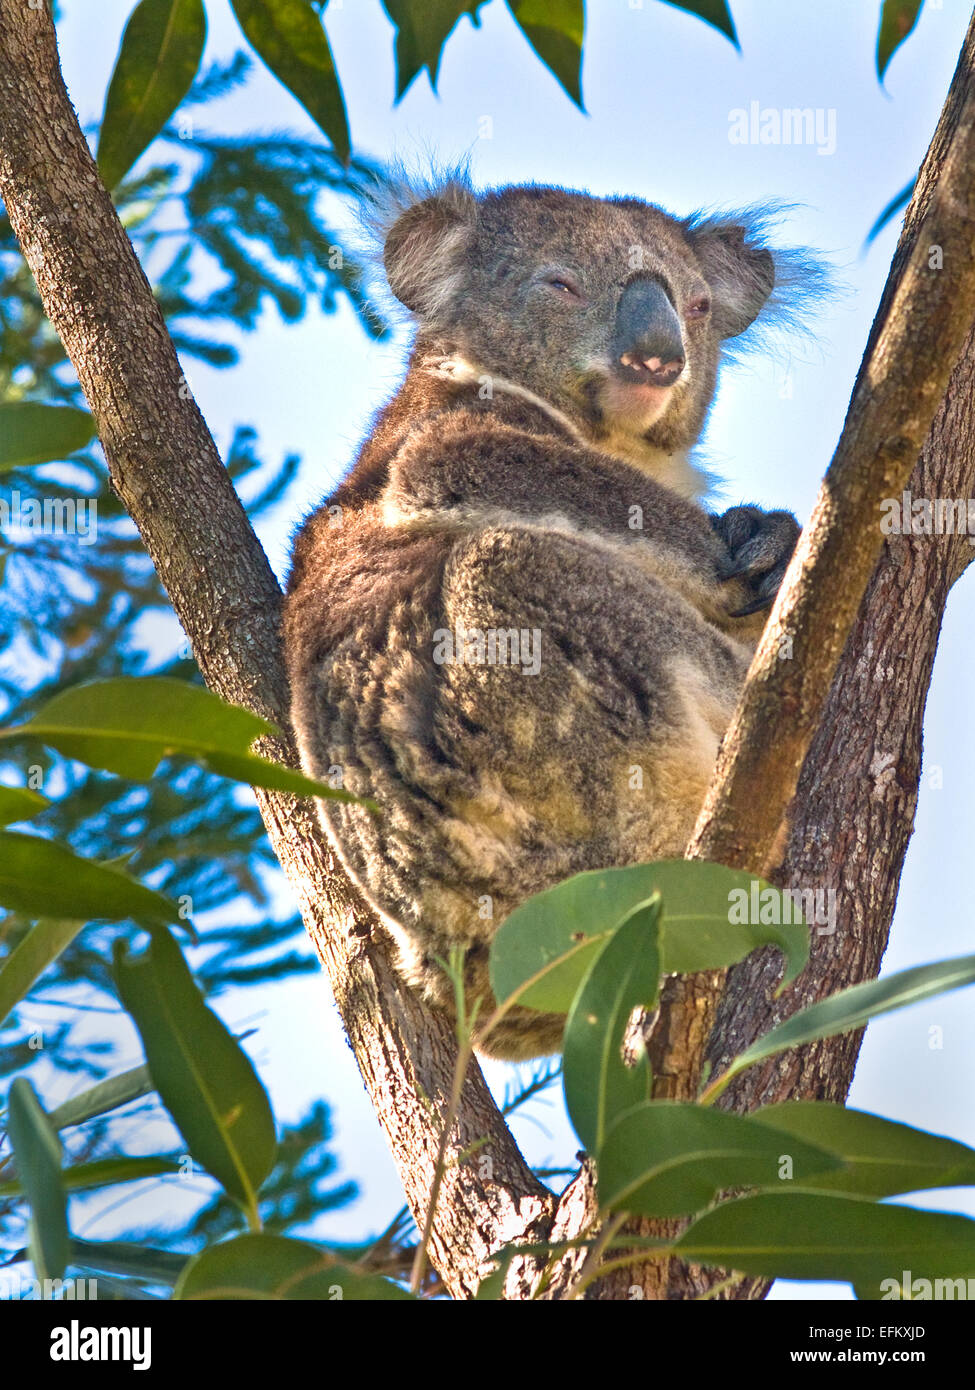 Australia: Koala (Phascolarctus cinereus) en el árbol Foto de stock